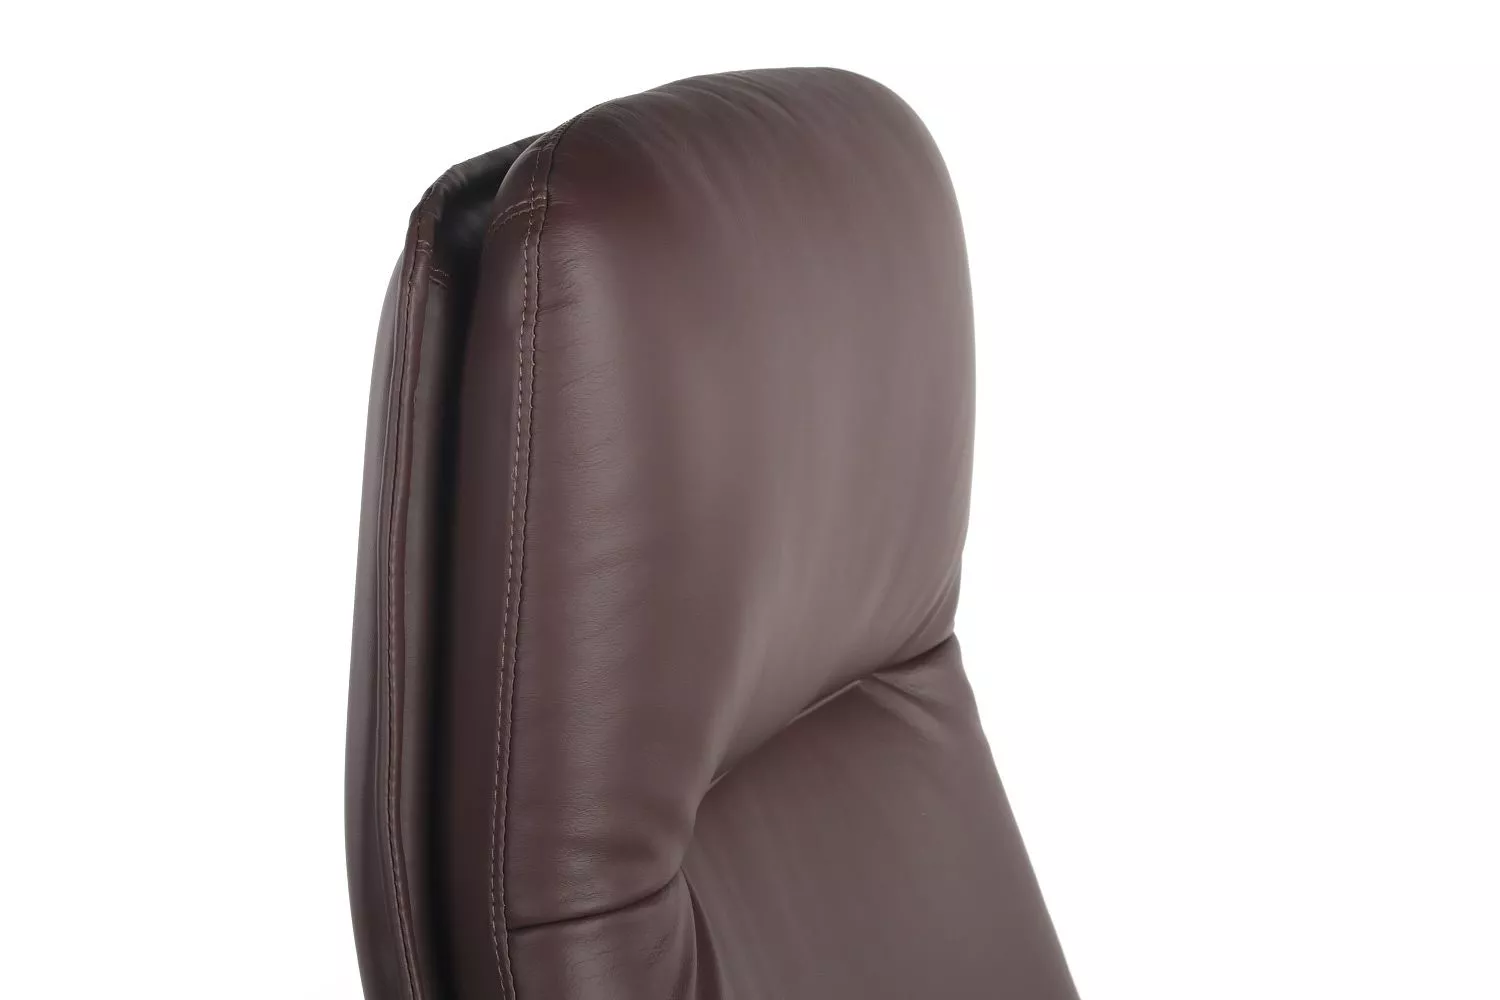 Офисное кресло из натуральной кожи RIVA DESIGN Batisto (A2018) коричневый